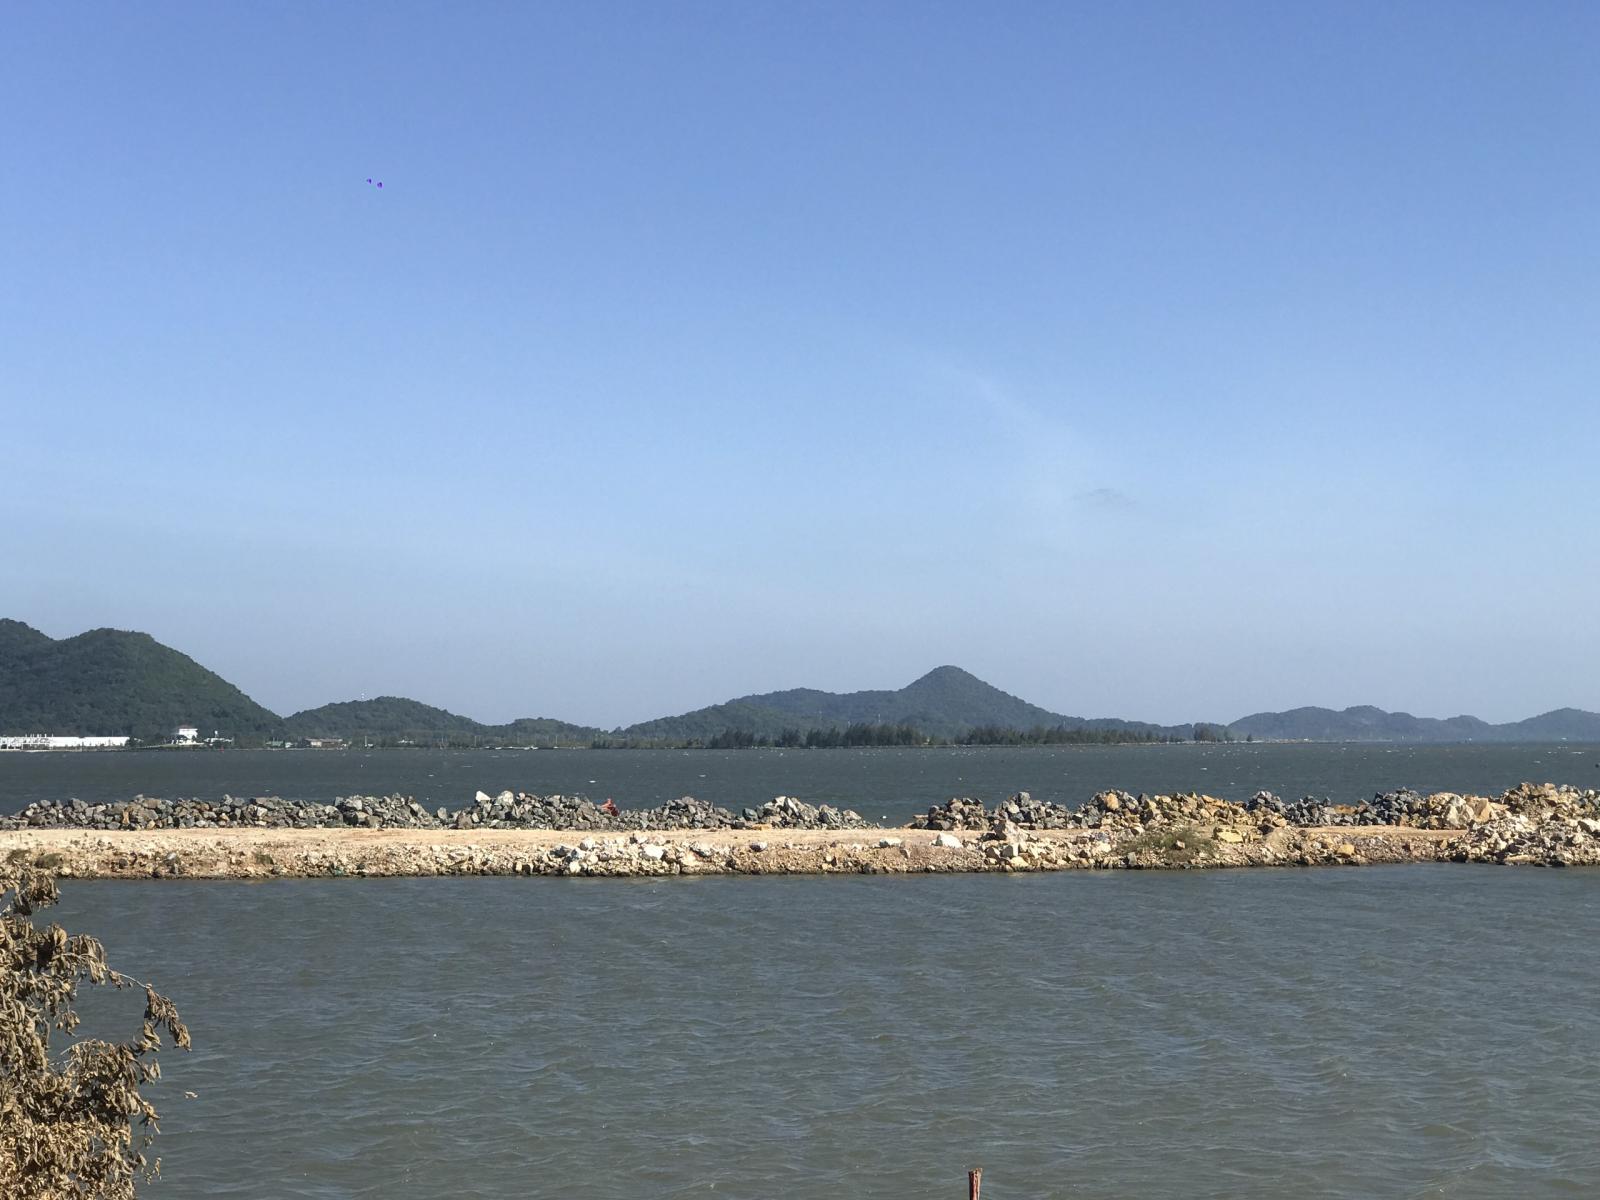 Đất trung tâm Hà Tiên 100m2, view biển, giá tốt chỉ từ 500triệu. 11227448